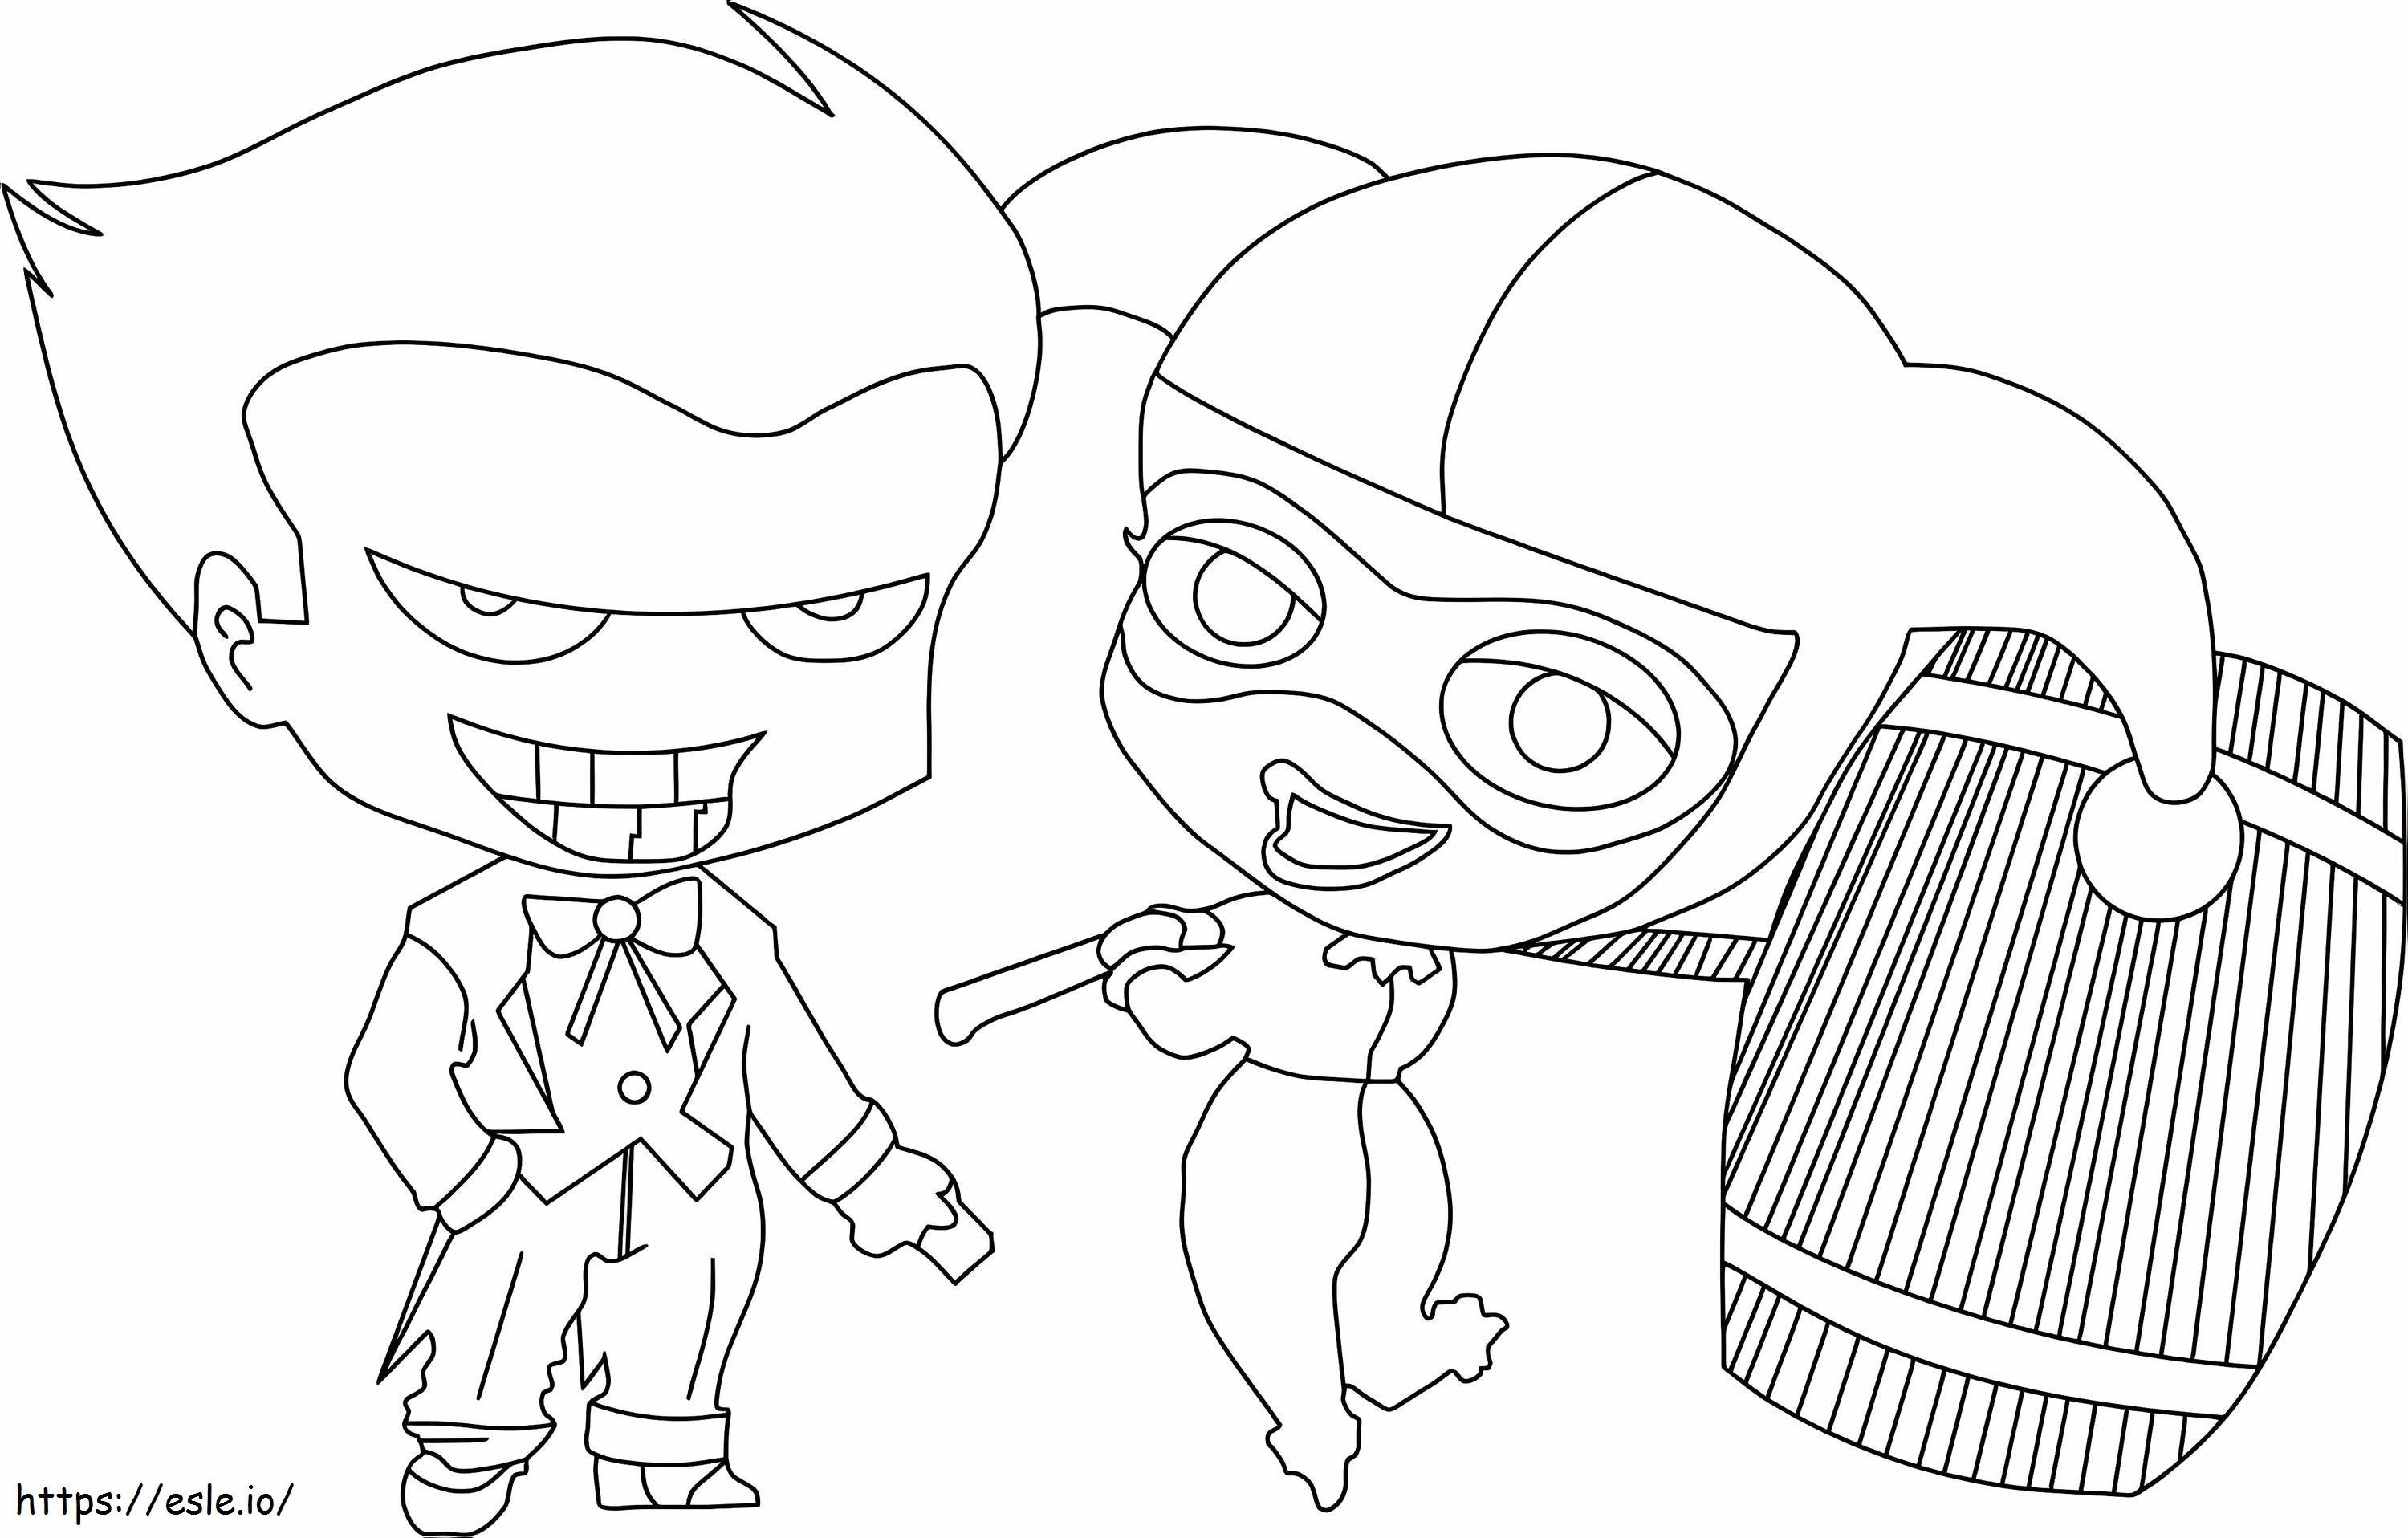 Chibi Joker y Chibi Harley Quinn sosteniendo un martillo para colorear